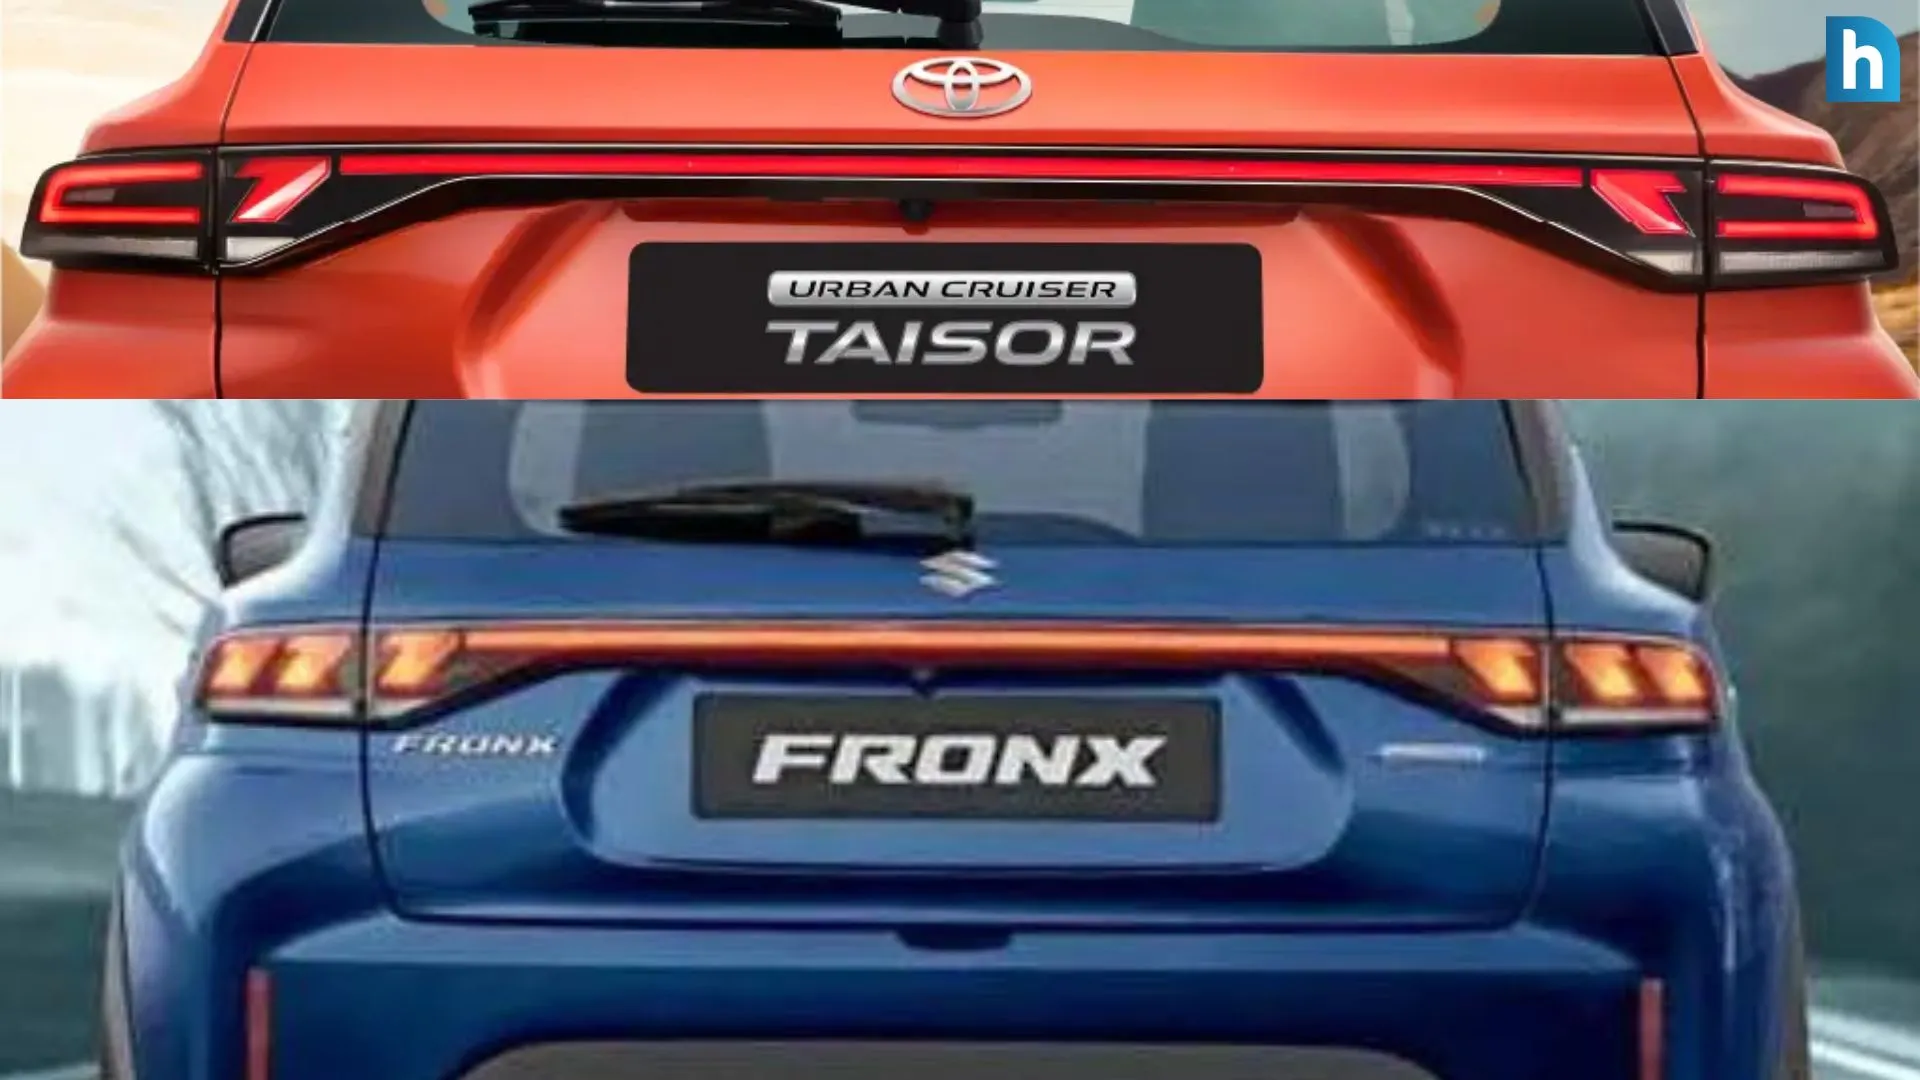 Taisor vs Fronx Rear